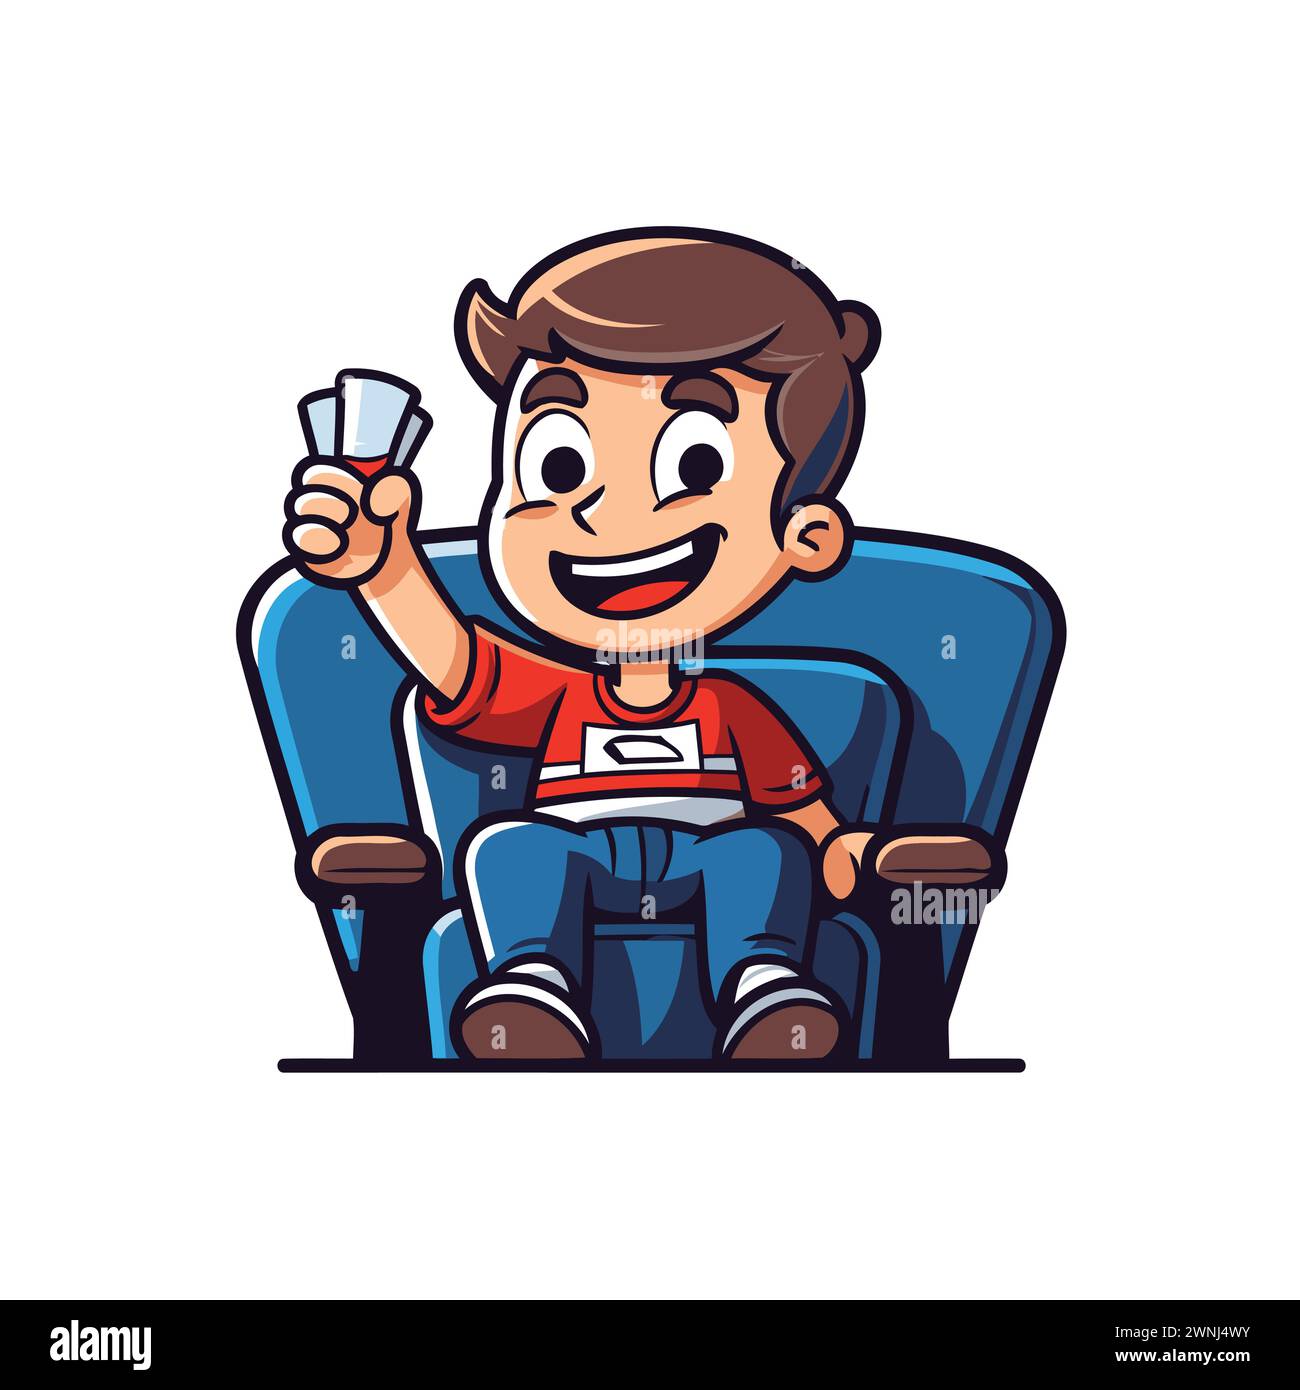 Garçon de dessin animé assis dans un fauteuil et mangeant du pop-corn. Illustration vectorielle. Illustration de Vecteur